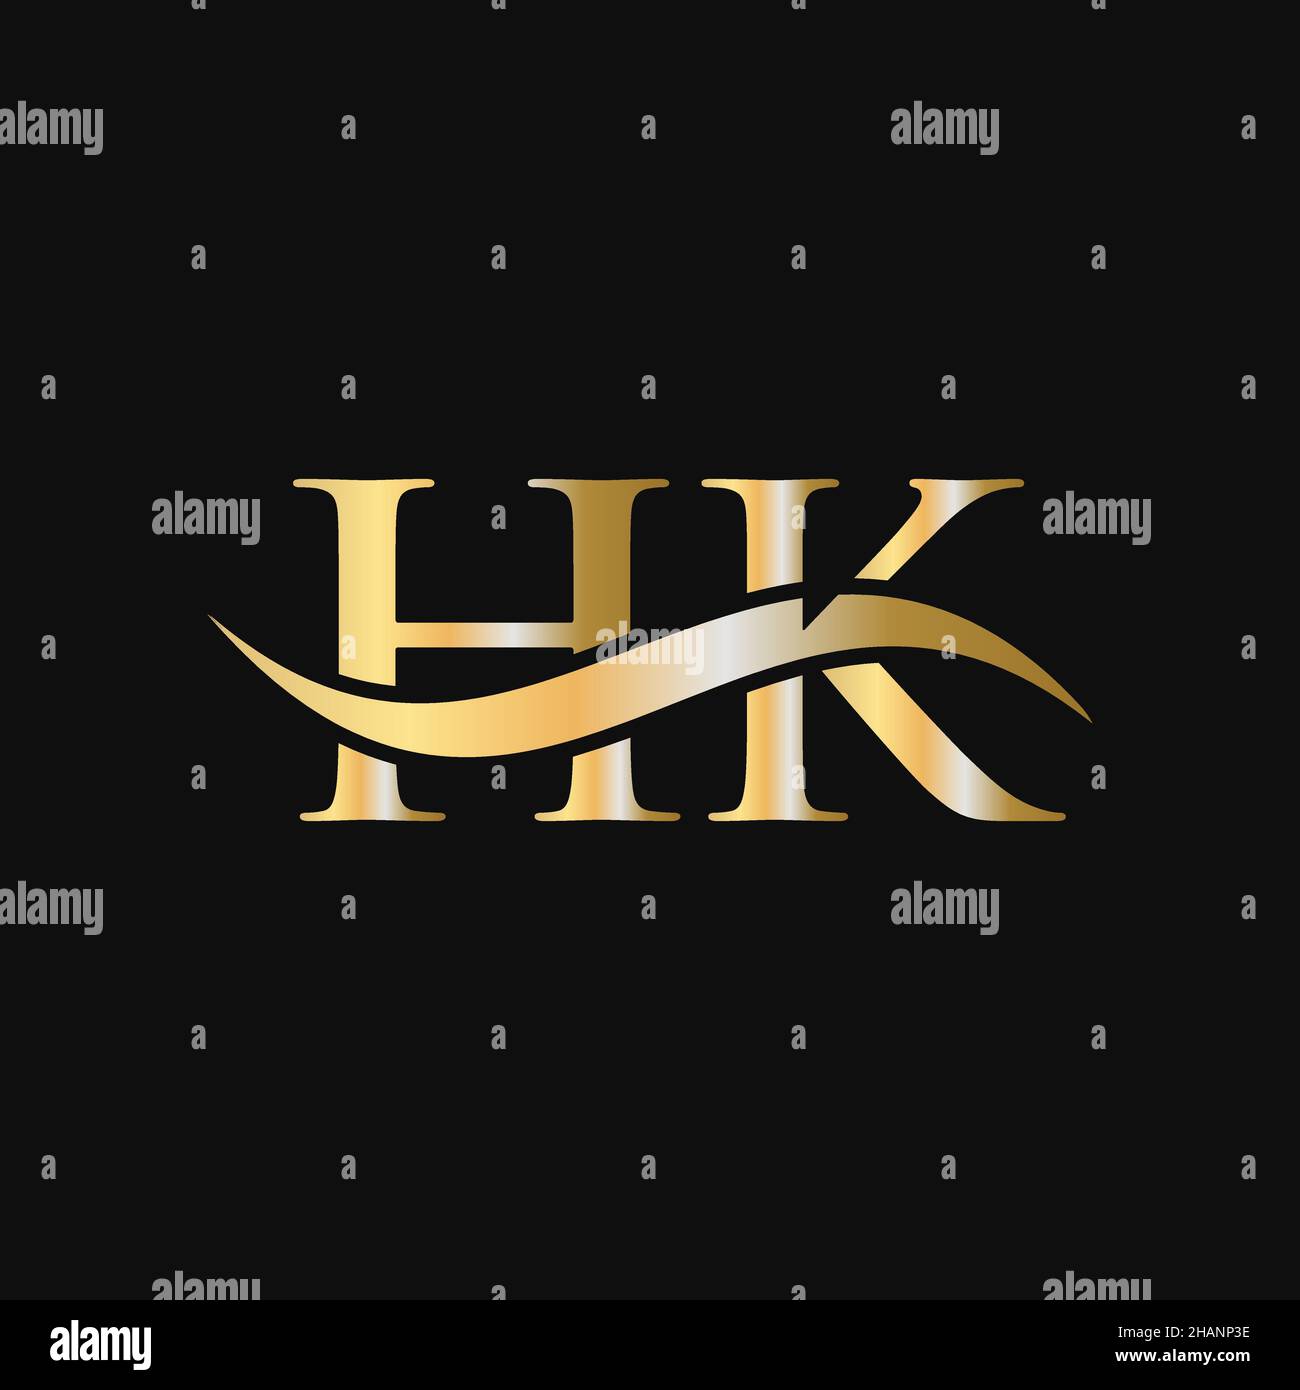 Design-Vorlage für das HK-Logo. HK, H K Buchstabe Logo Modern, flach, minimalistisch, Geschäft, Firmenzeichen Stock Vektor